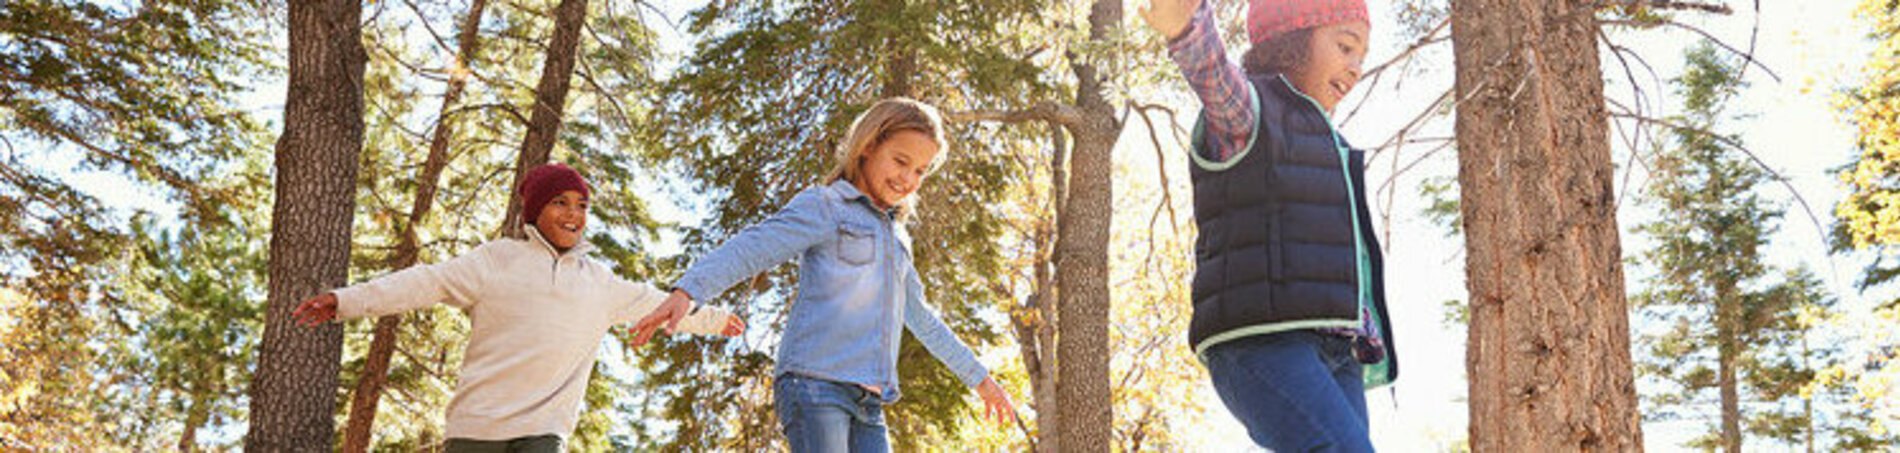 Kinder balancieren auf Baumstamm